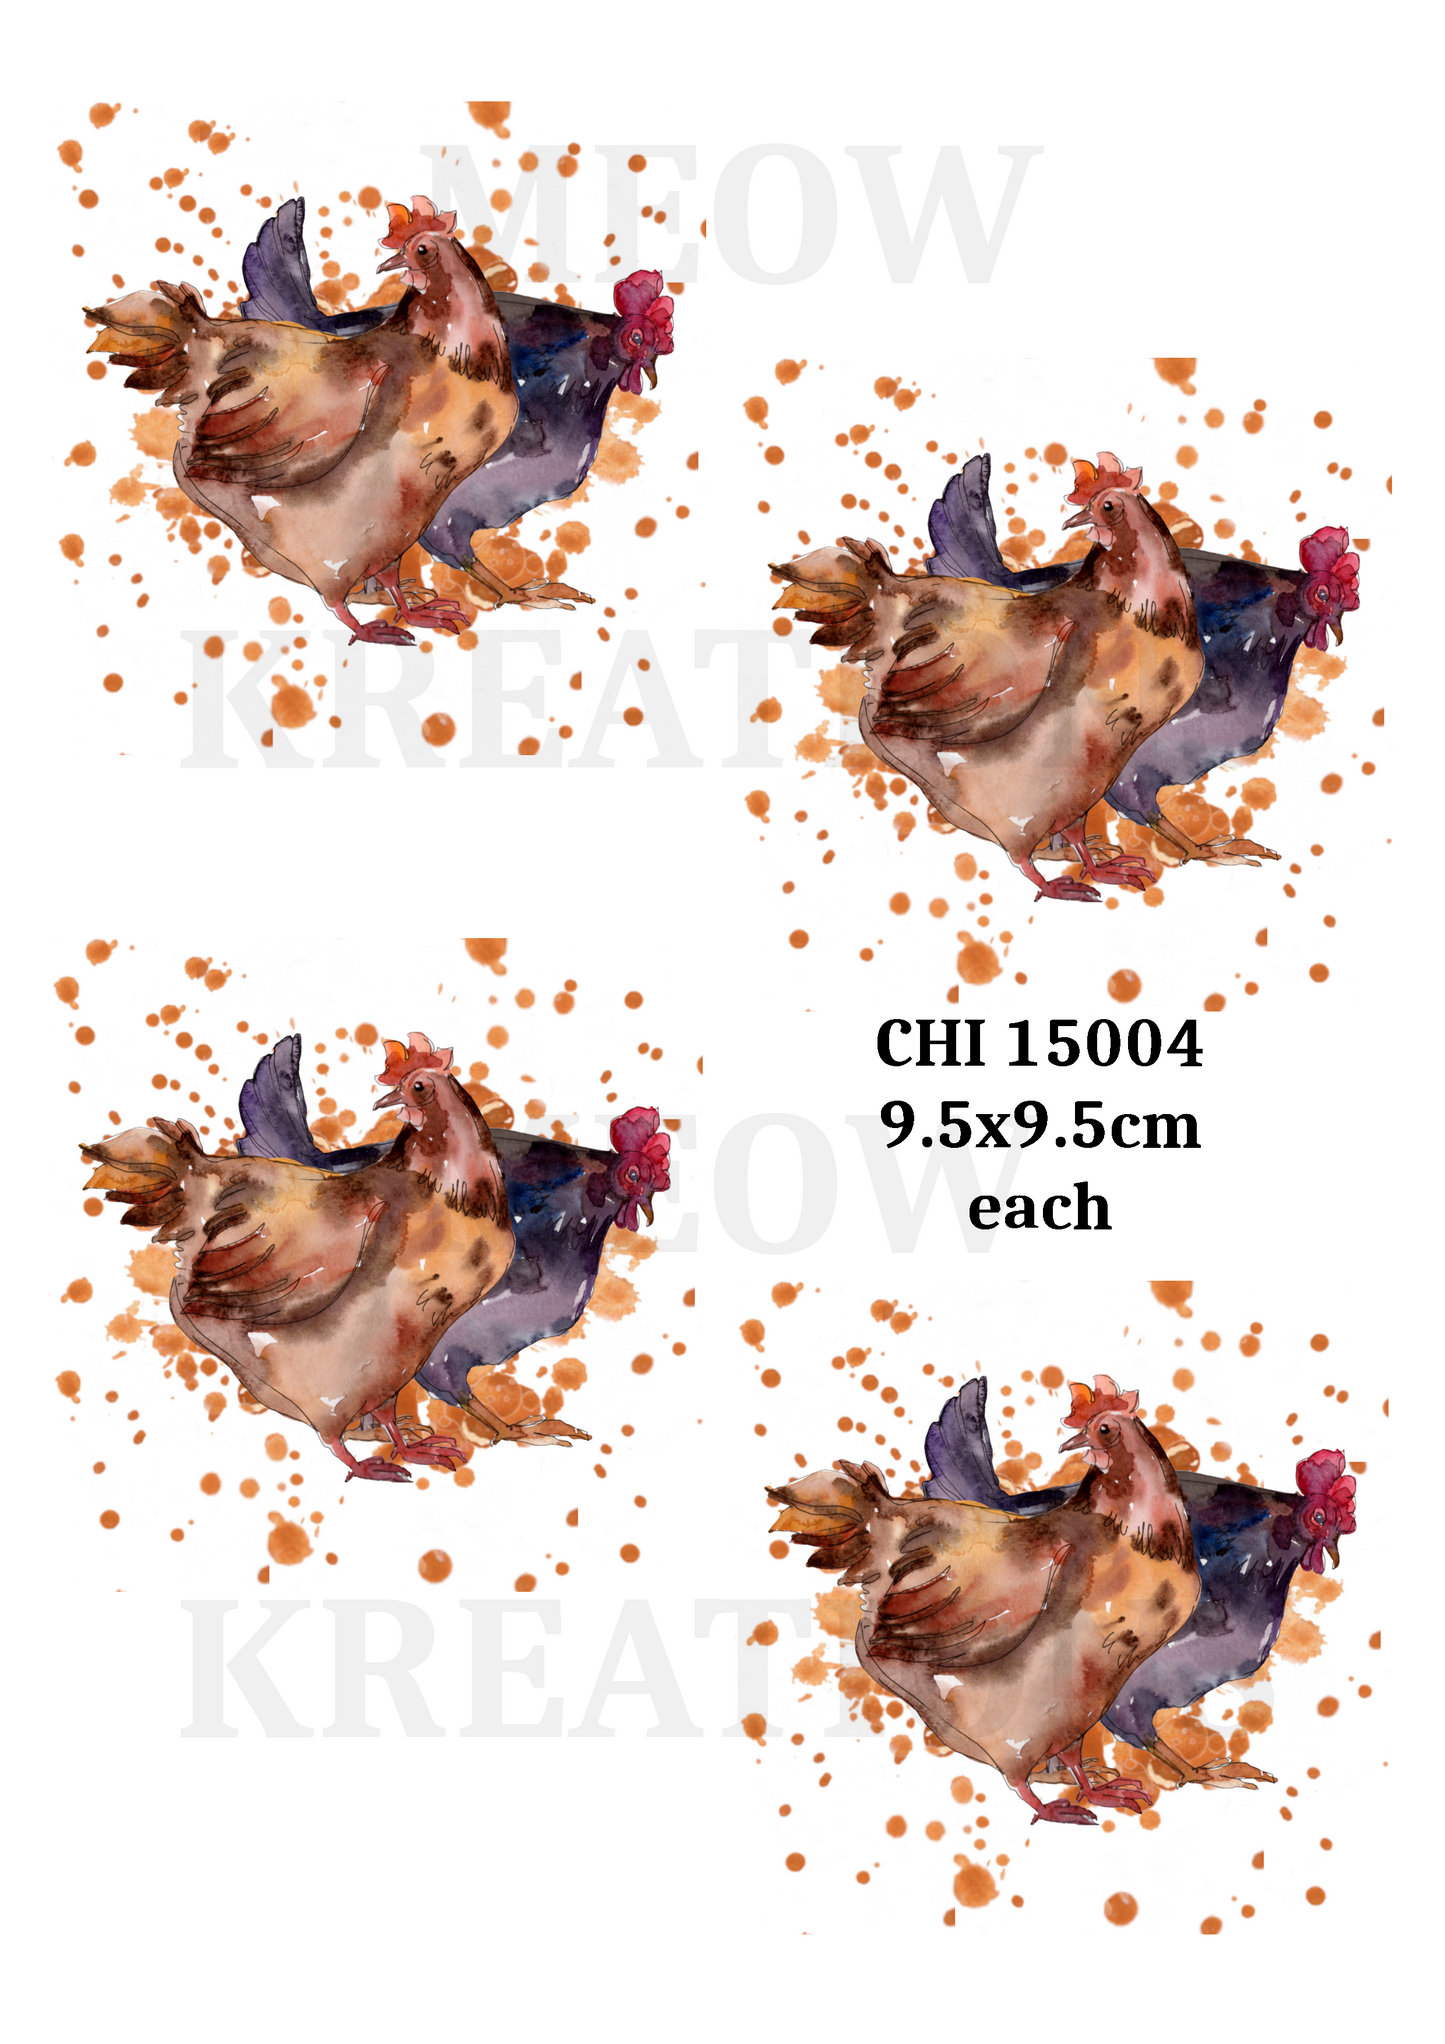 CHI 15004